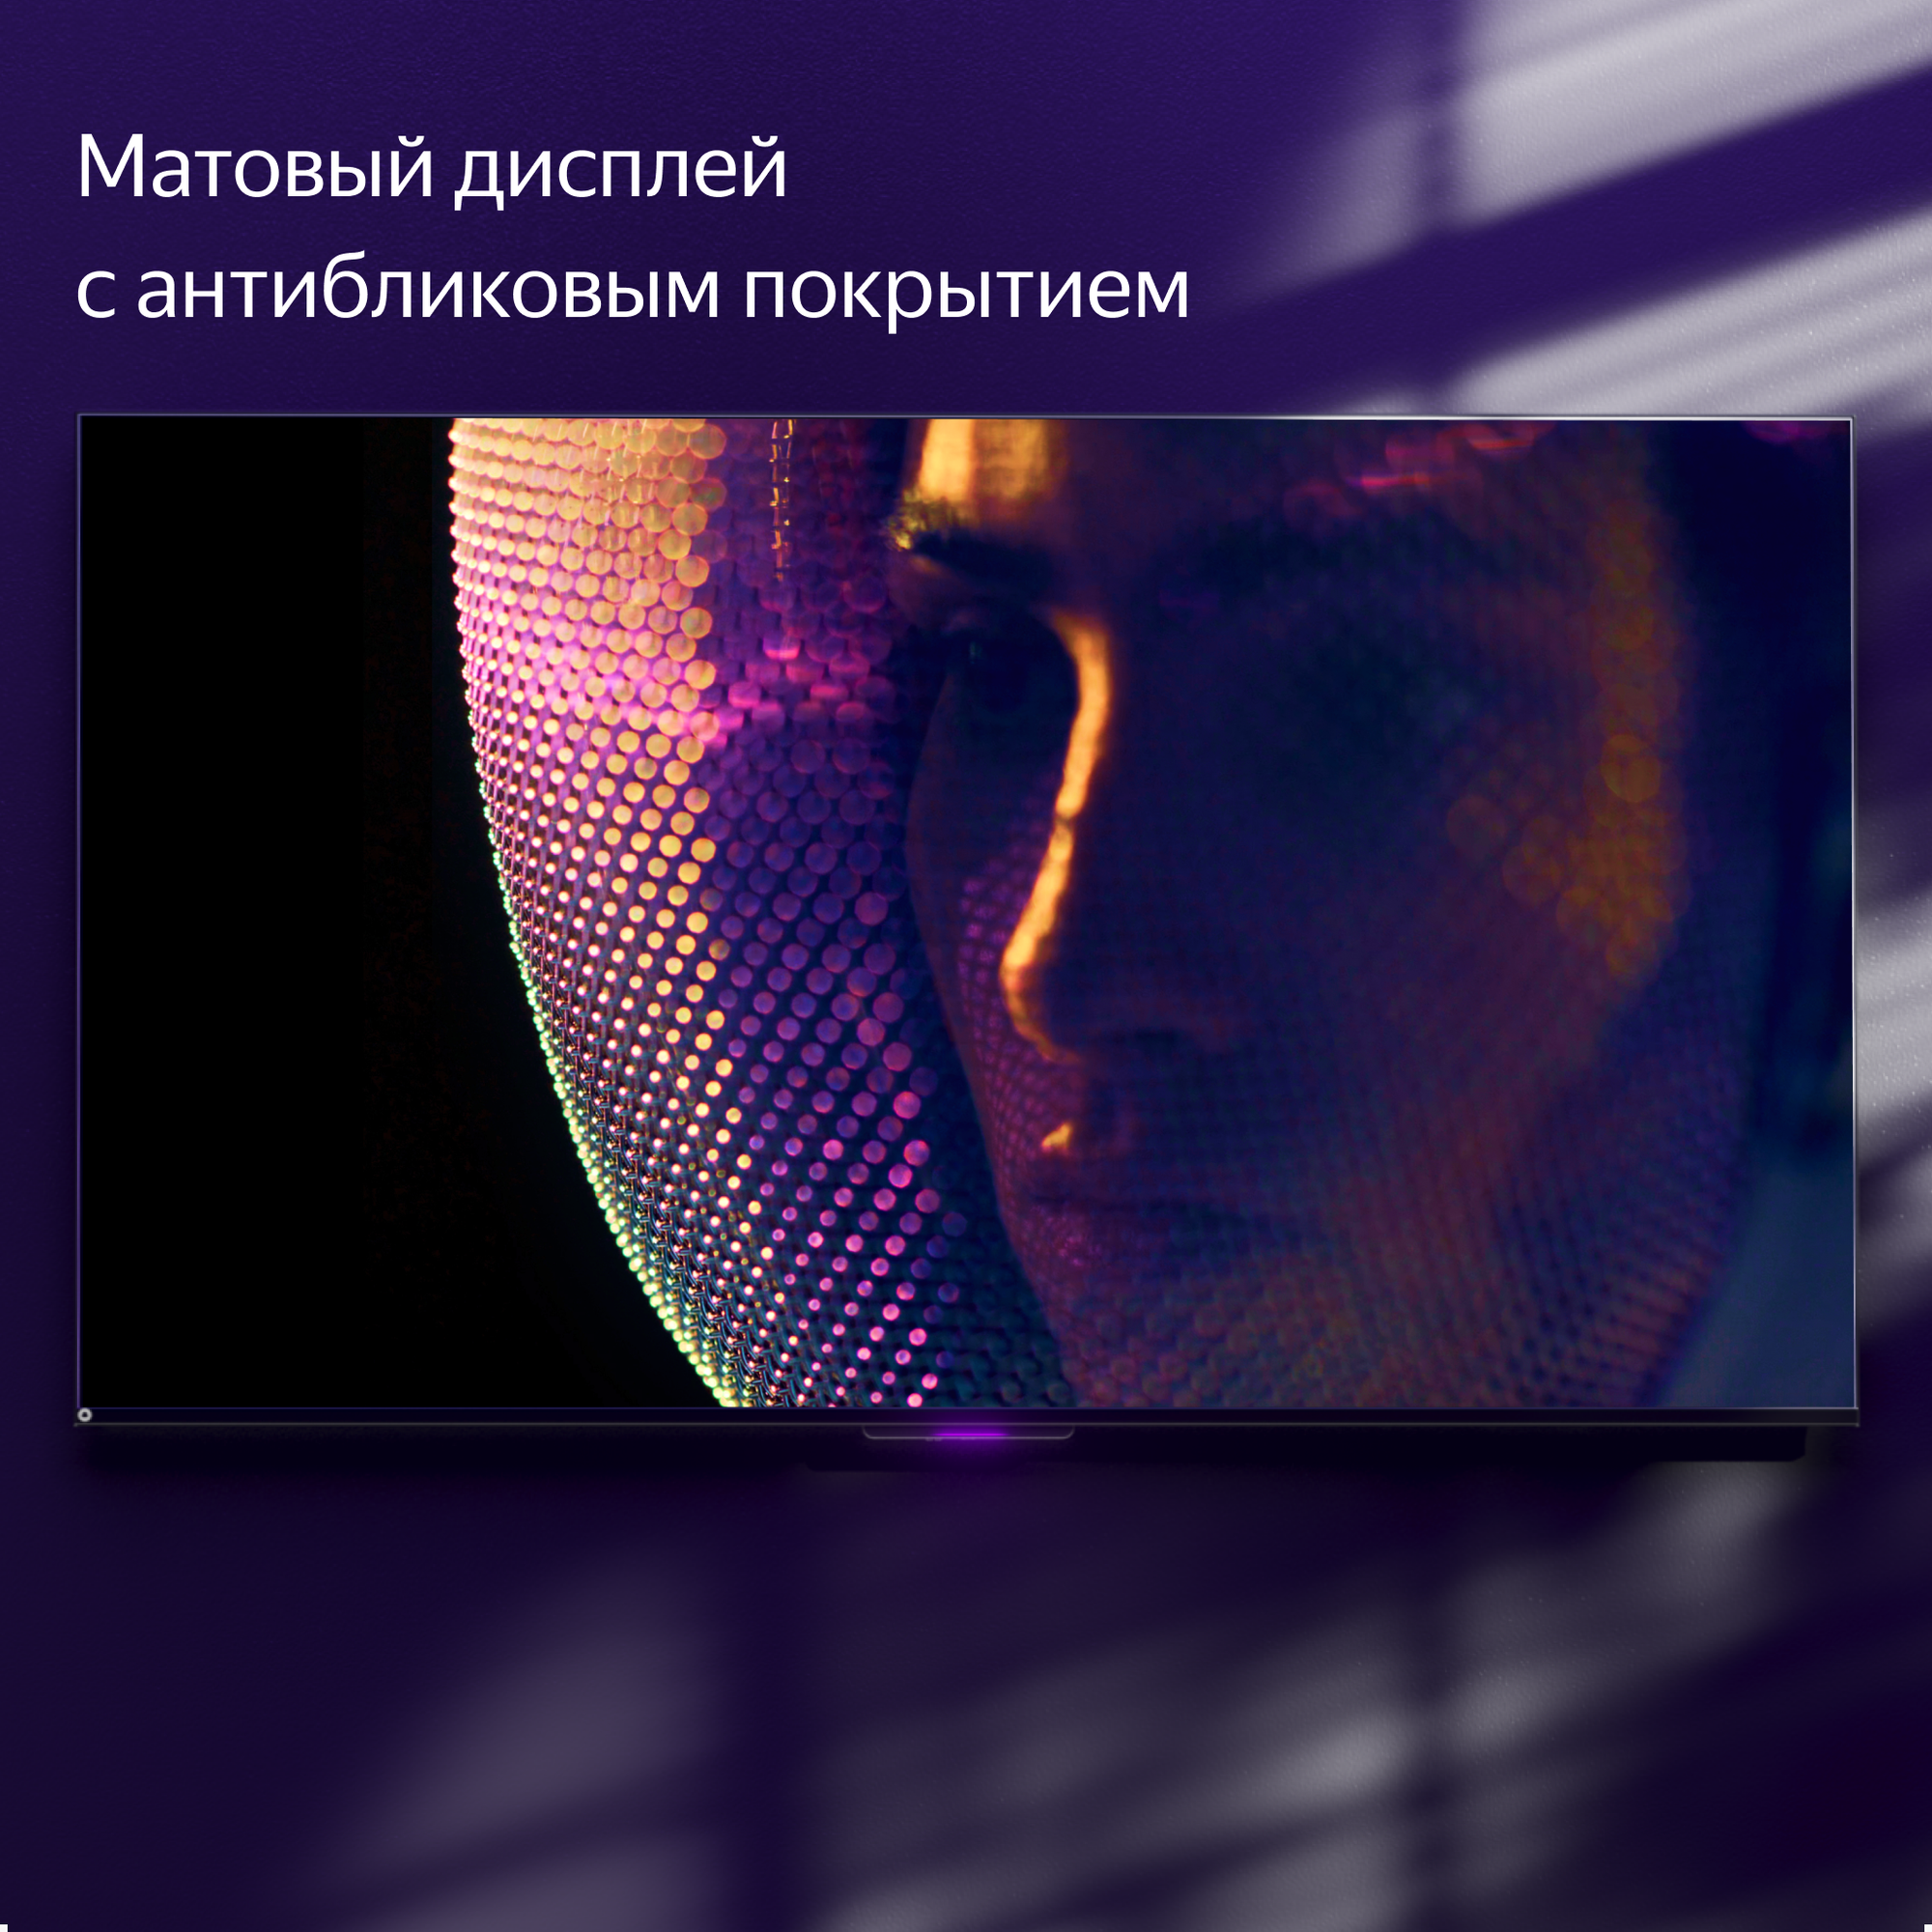 Яндекс ТВ Станция Про новый телевизор с Алисой на YandexGPT,  65“ 4K UHD, черный